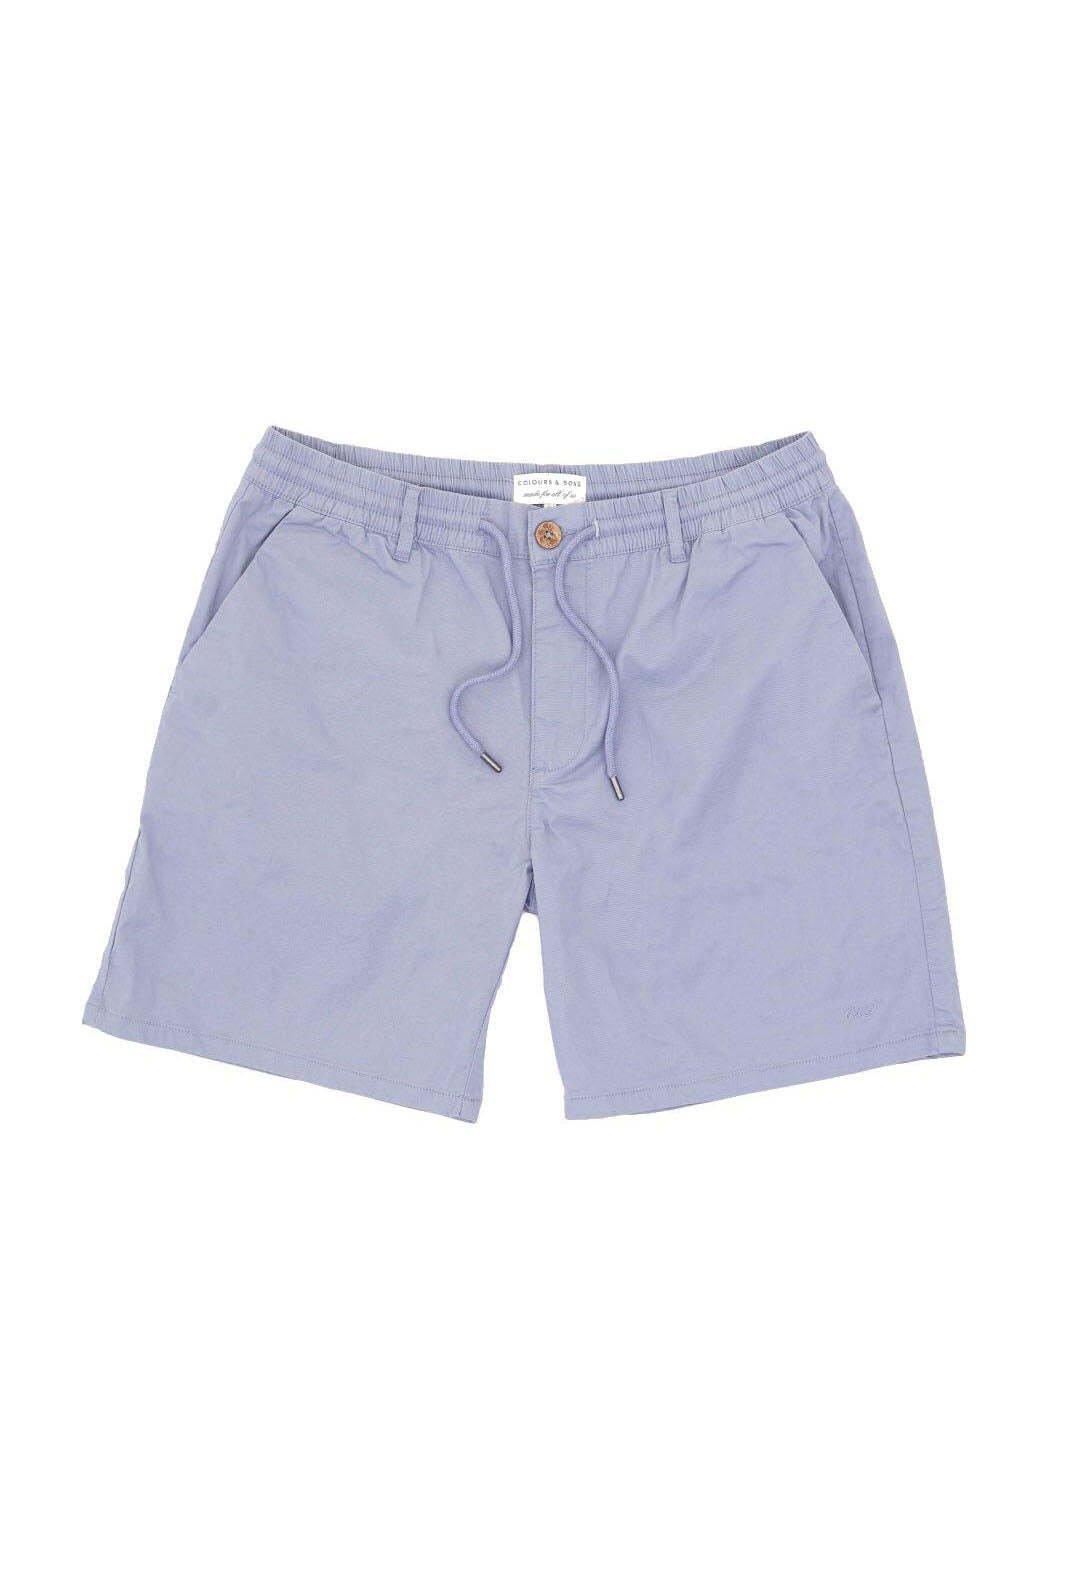 Shorts Shorts Light Twill Herren Blau M von Colours & Sons